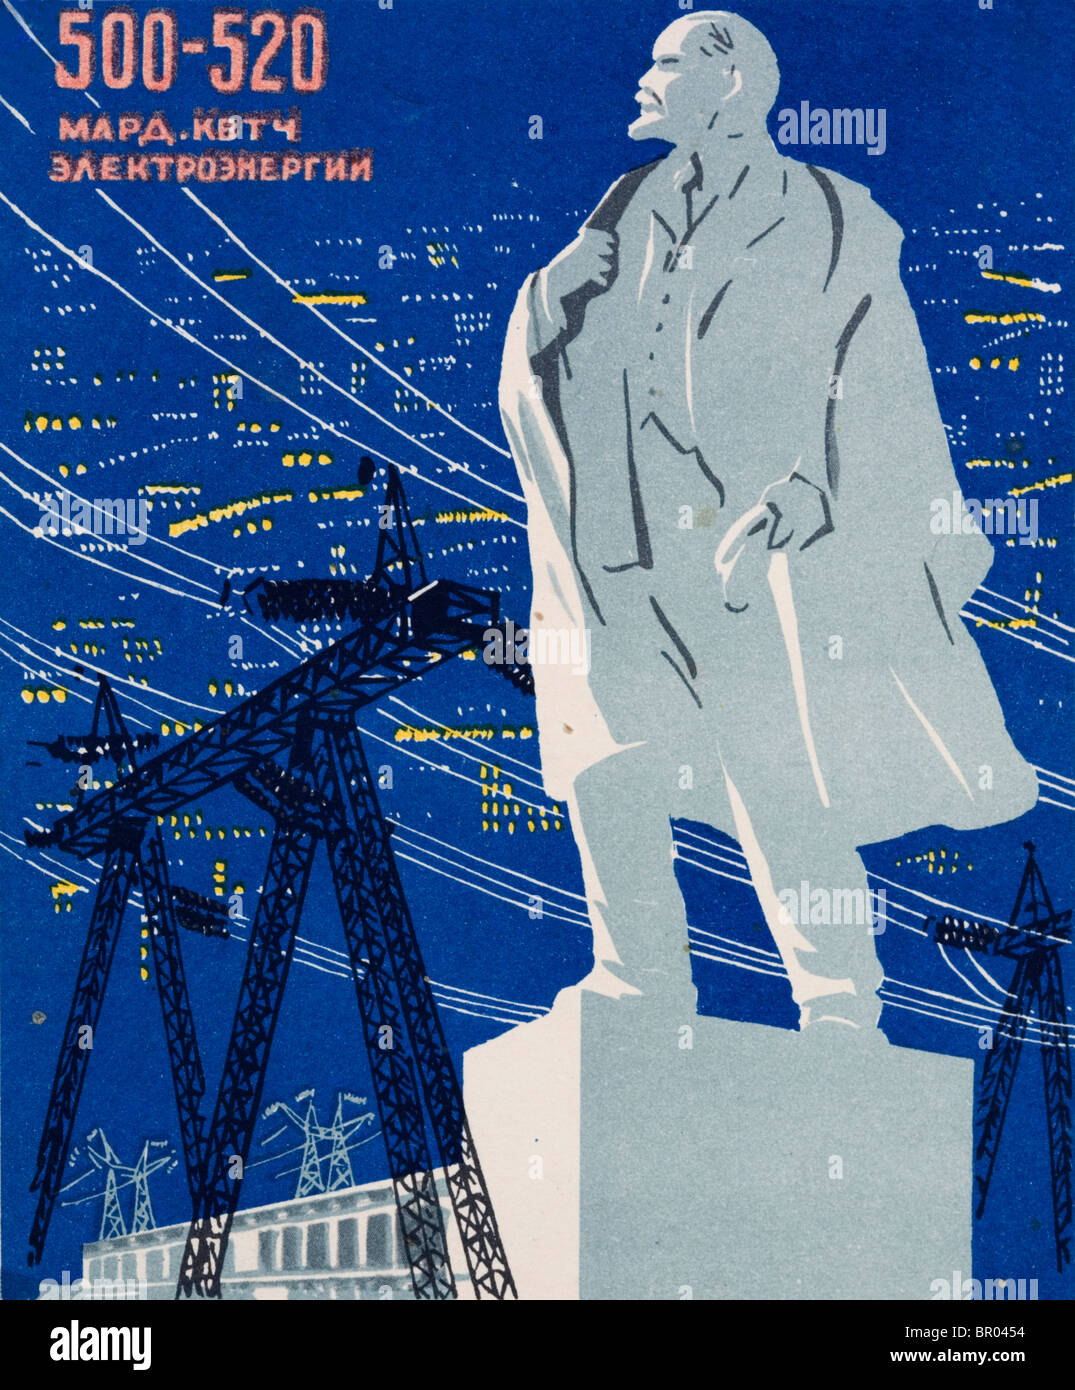 Union soviétique (URSS) affiche représentant Lénine qui préside l'électrification de l'Union Soviétique Banque D'Images